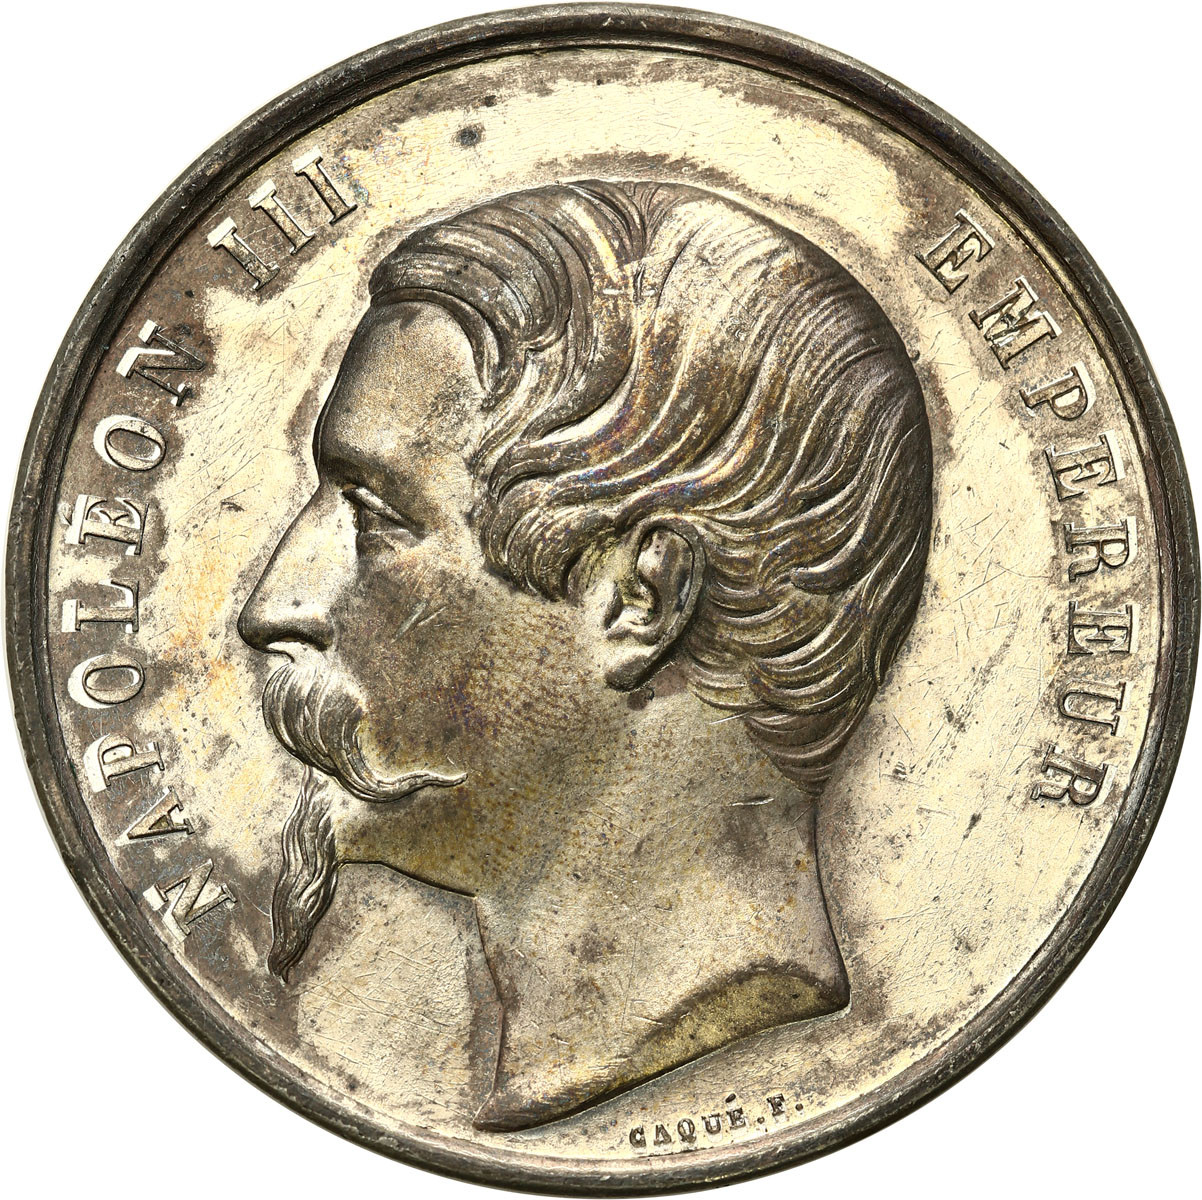 Włochy. Vittorio Emanuele II (1849-1861). Medal 1859 - Niepodległość Włoch, cynk